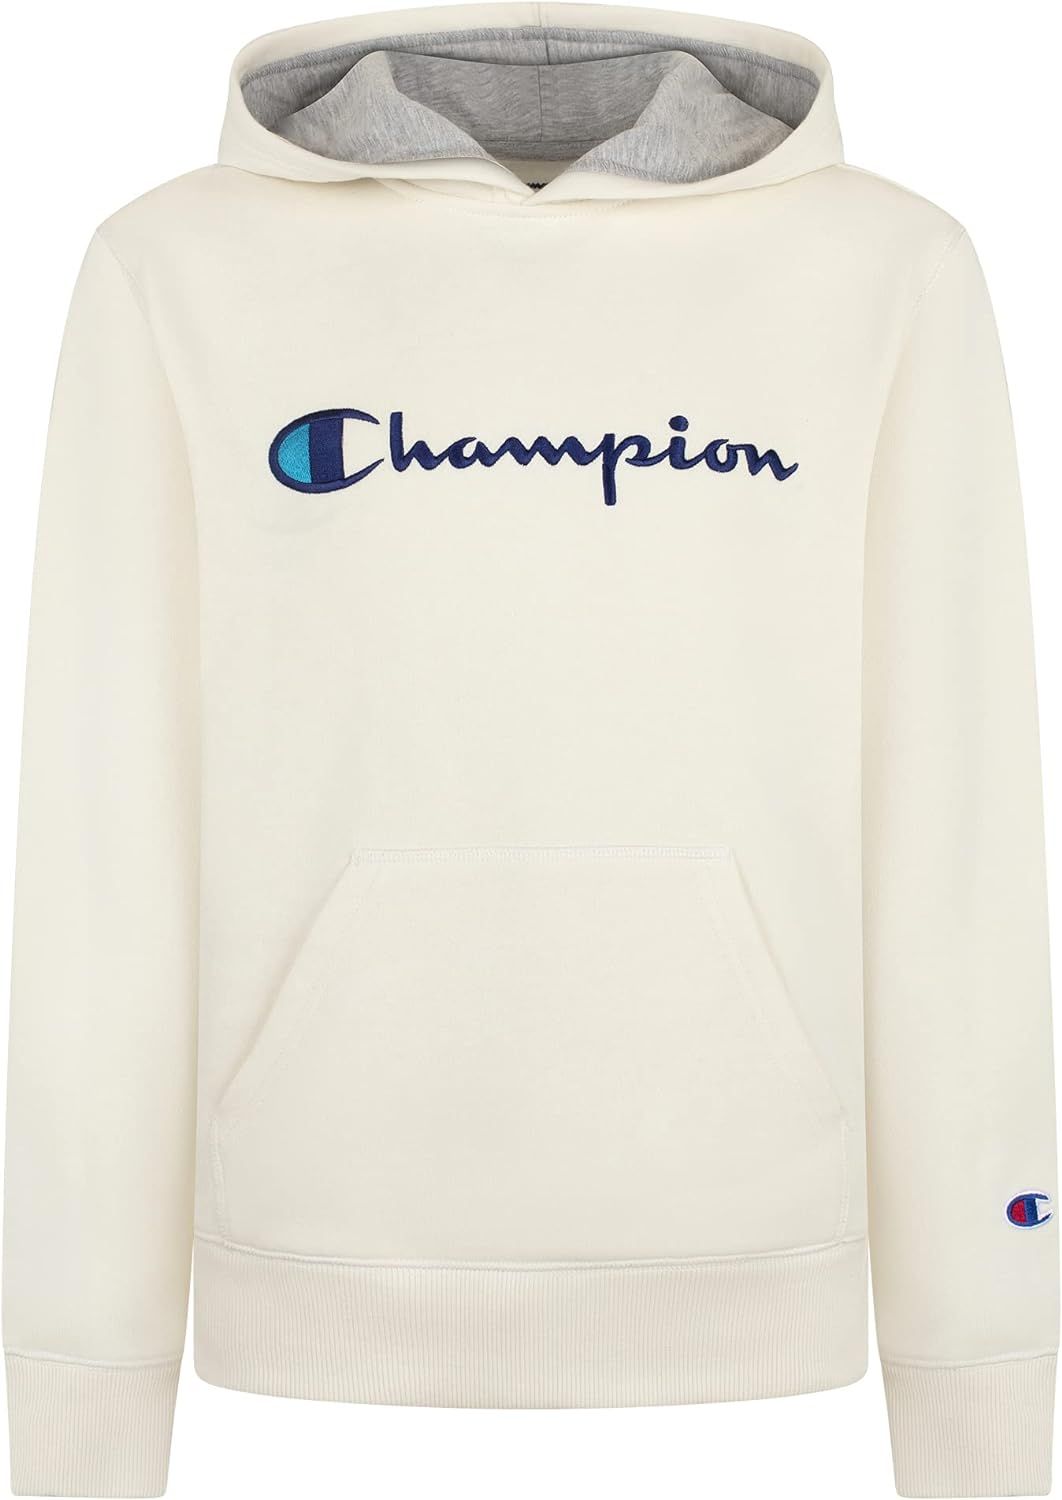 Champion Kids Clothes Sweatshirts Youth Heritage Fleece Pull On Hoody Sweatshirt with Hood | Amazon (US)